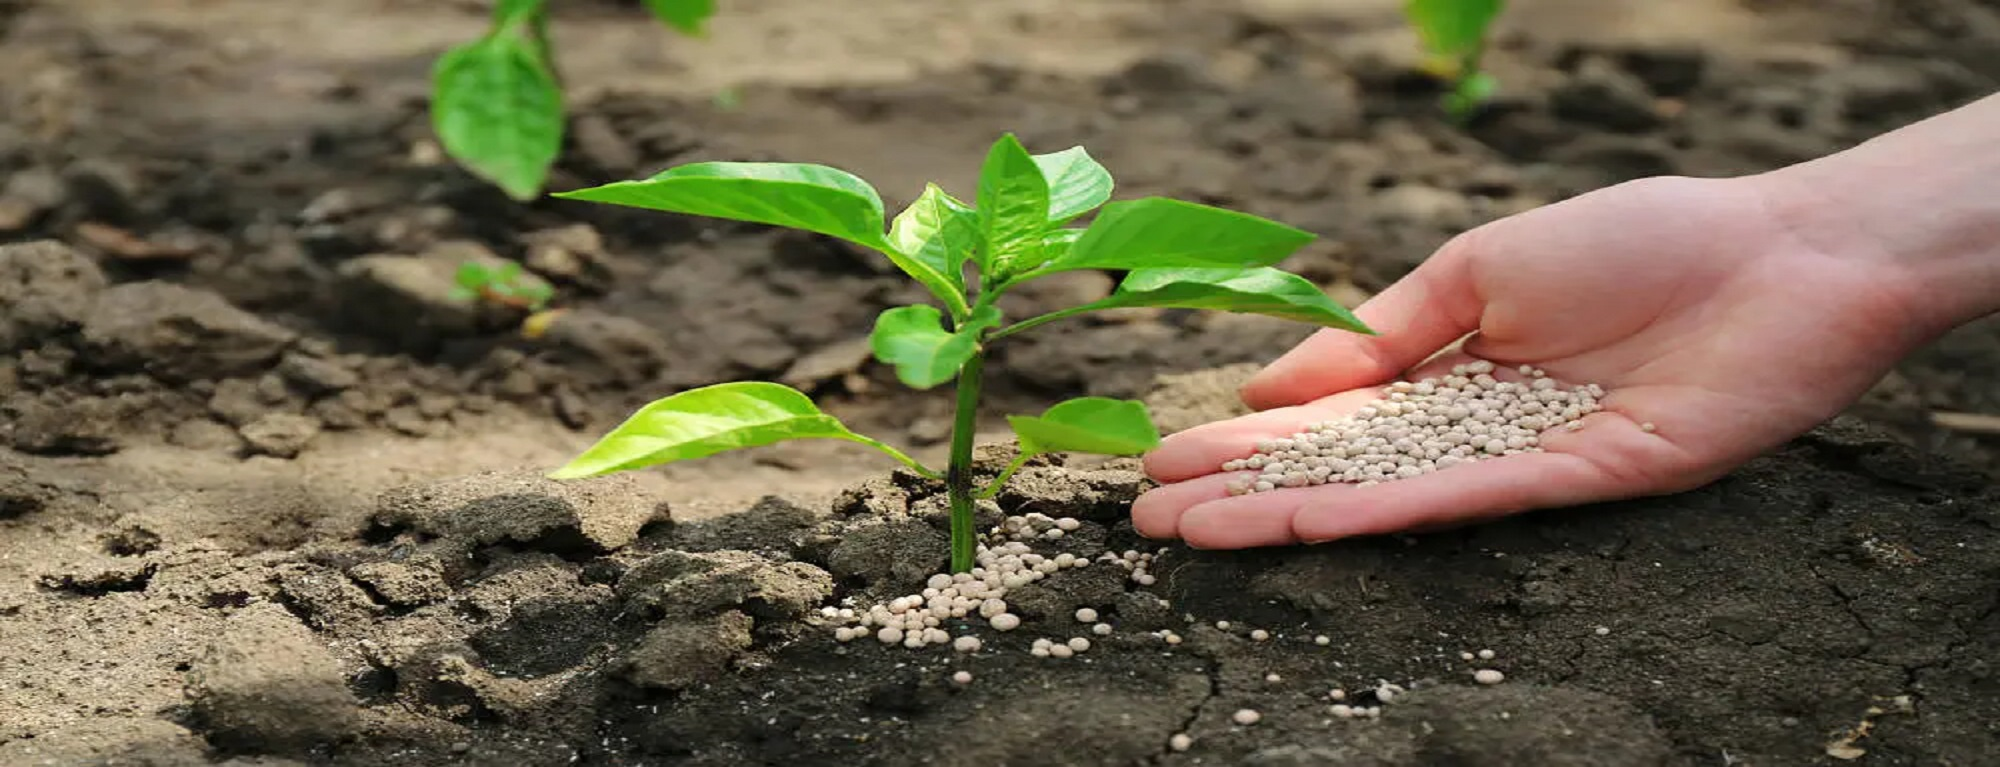 La agricultura, el uso de fertilizantes y sus efectos sobre el medio ambiente